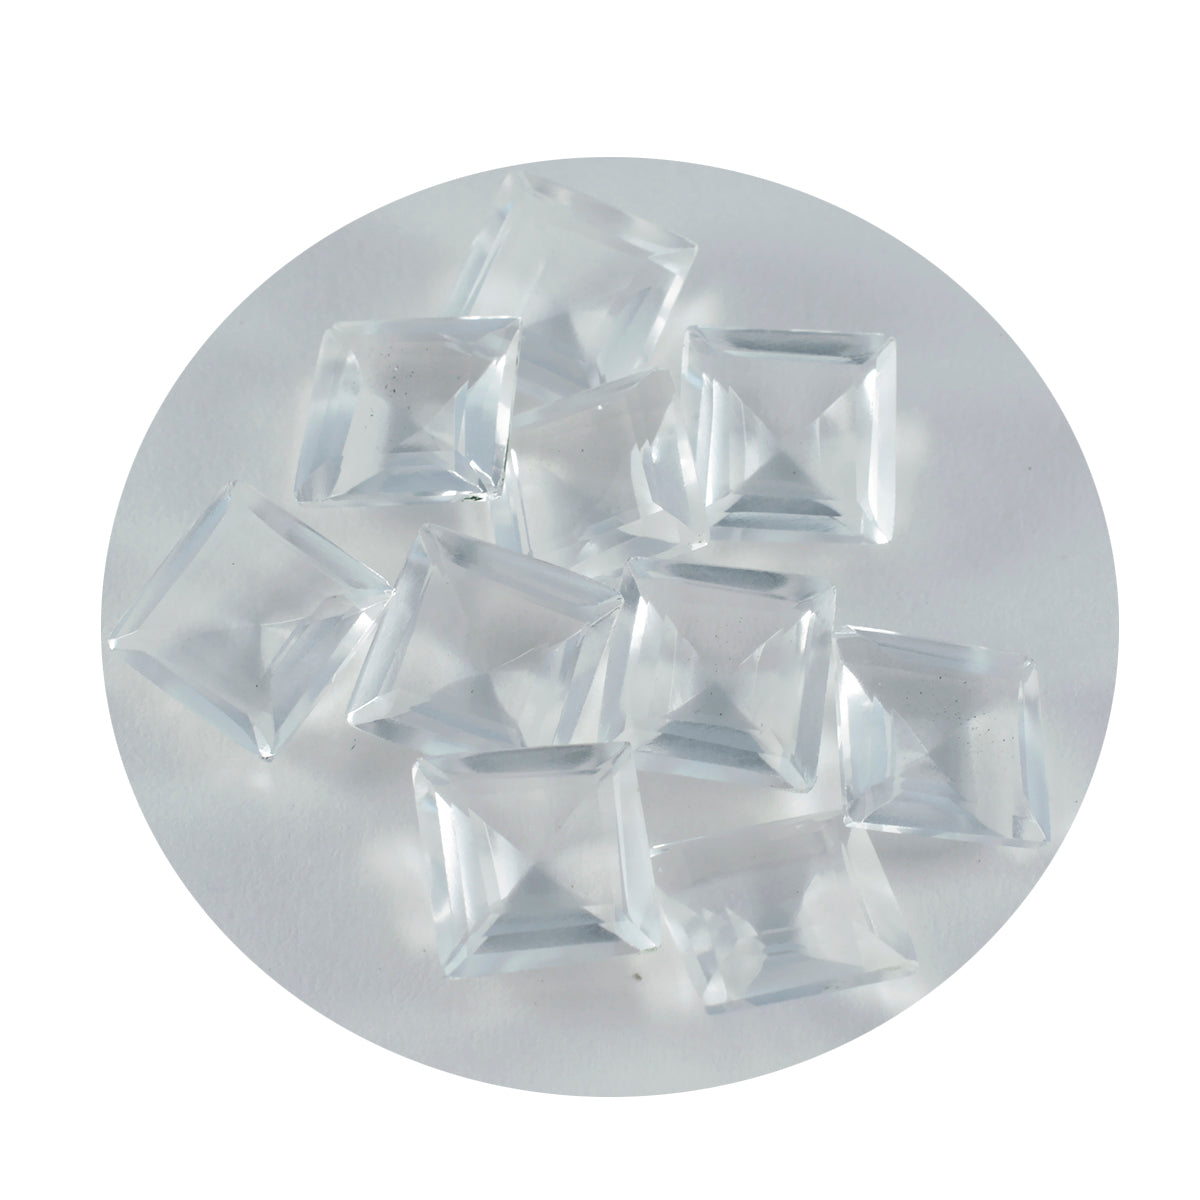 Riyogems 1PC wit kristalkwarts gefacetteerd 12x12 mm vierkante vorm mooie kwaliteit losse edelsteen